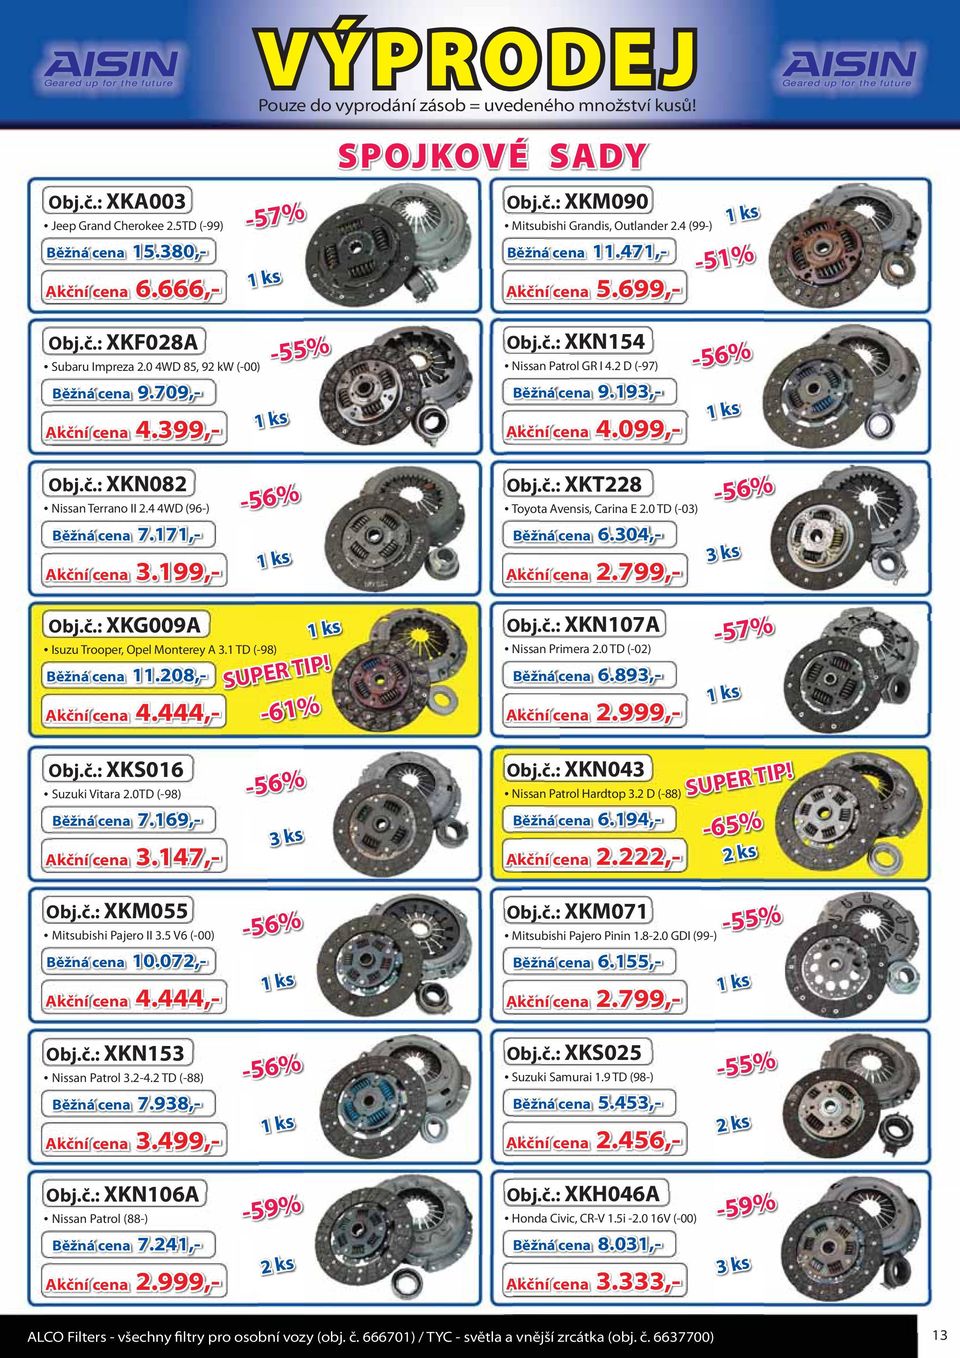 0 4WD 85, 92 kw (-00) Akční cena 4.399,- 9.709,- Běžná cena 9.709-55% Obj.č.: XKN154 Nissan Patrol GR I 4.2 D (-97) Akční cena 4.099,- 9.193,- Běžná cena 9.193-56% Obj.č.: XKN082 Nissan Terrano II 2.